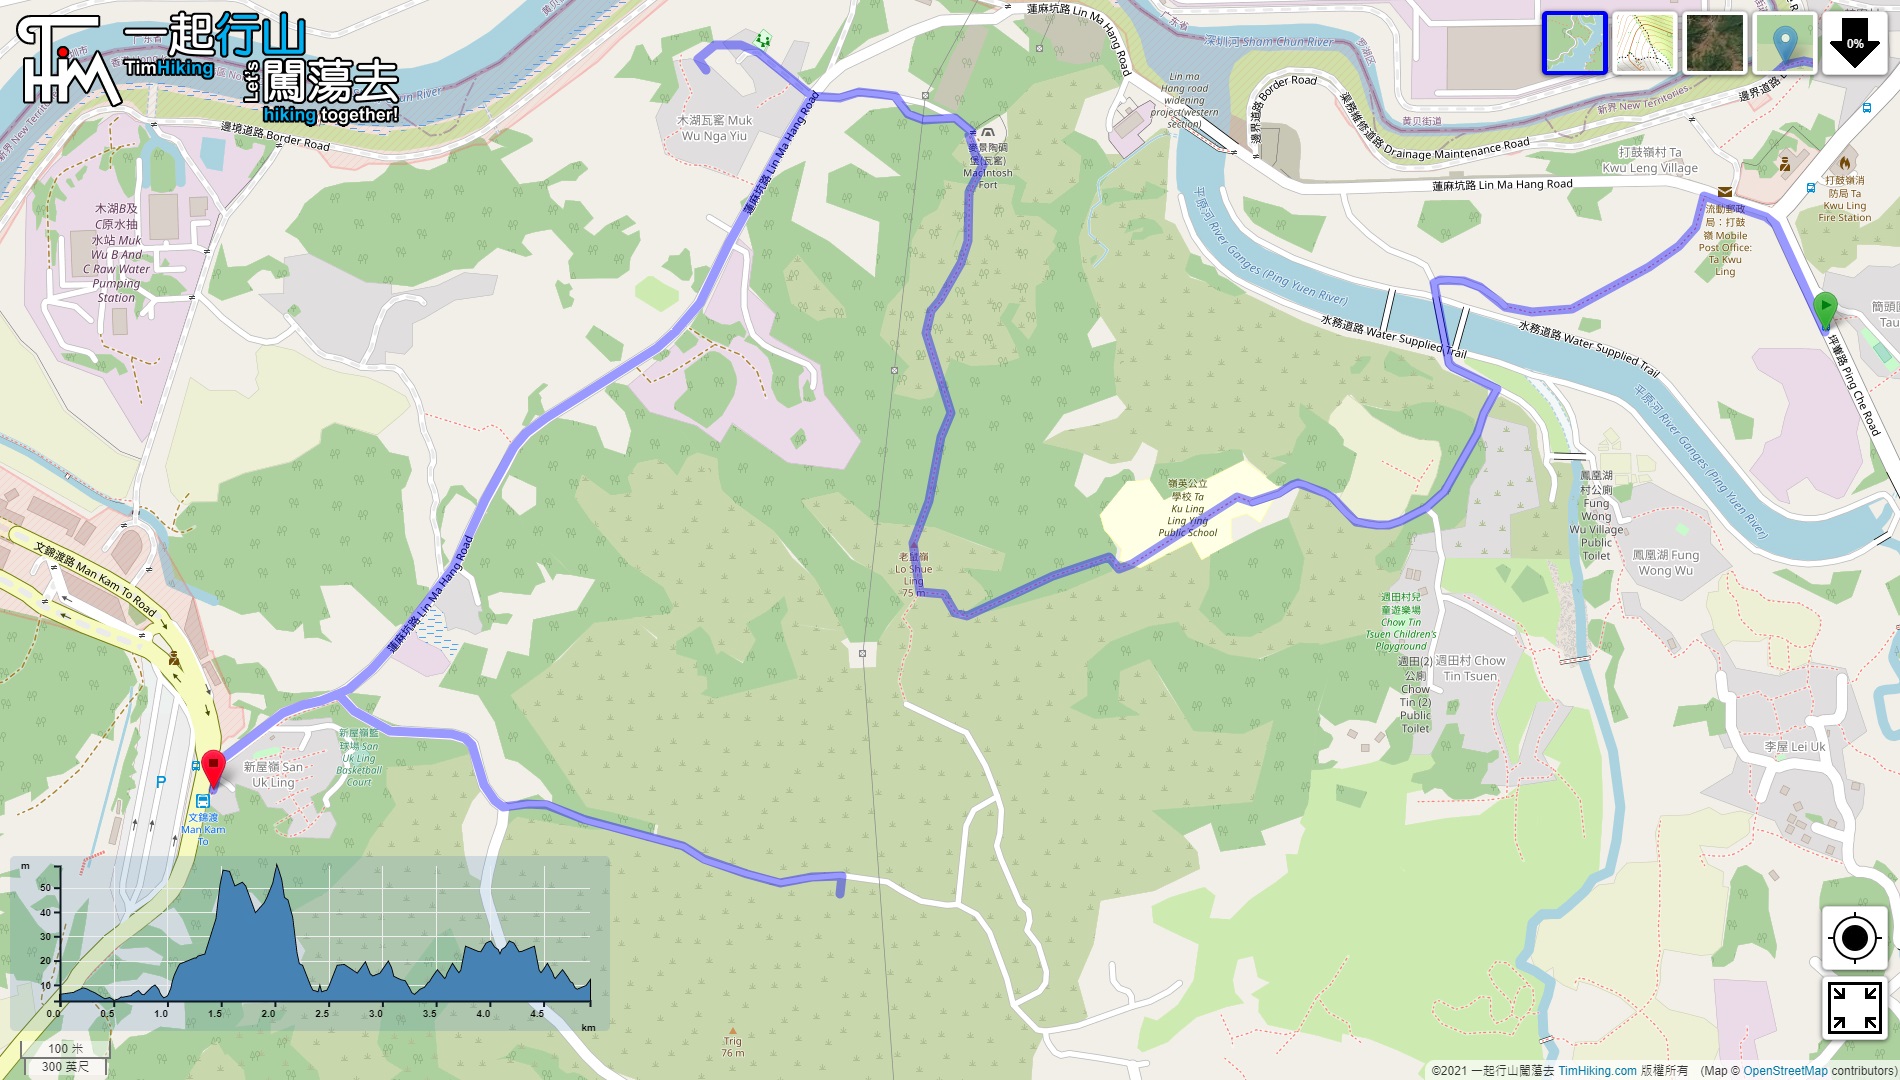 「老鼠嶺 木湖瓦窰 雙英磚廠」路線地圖